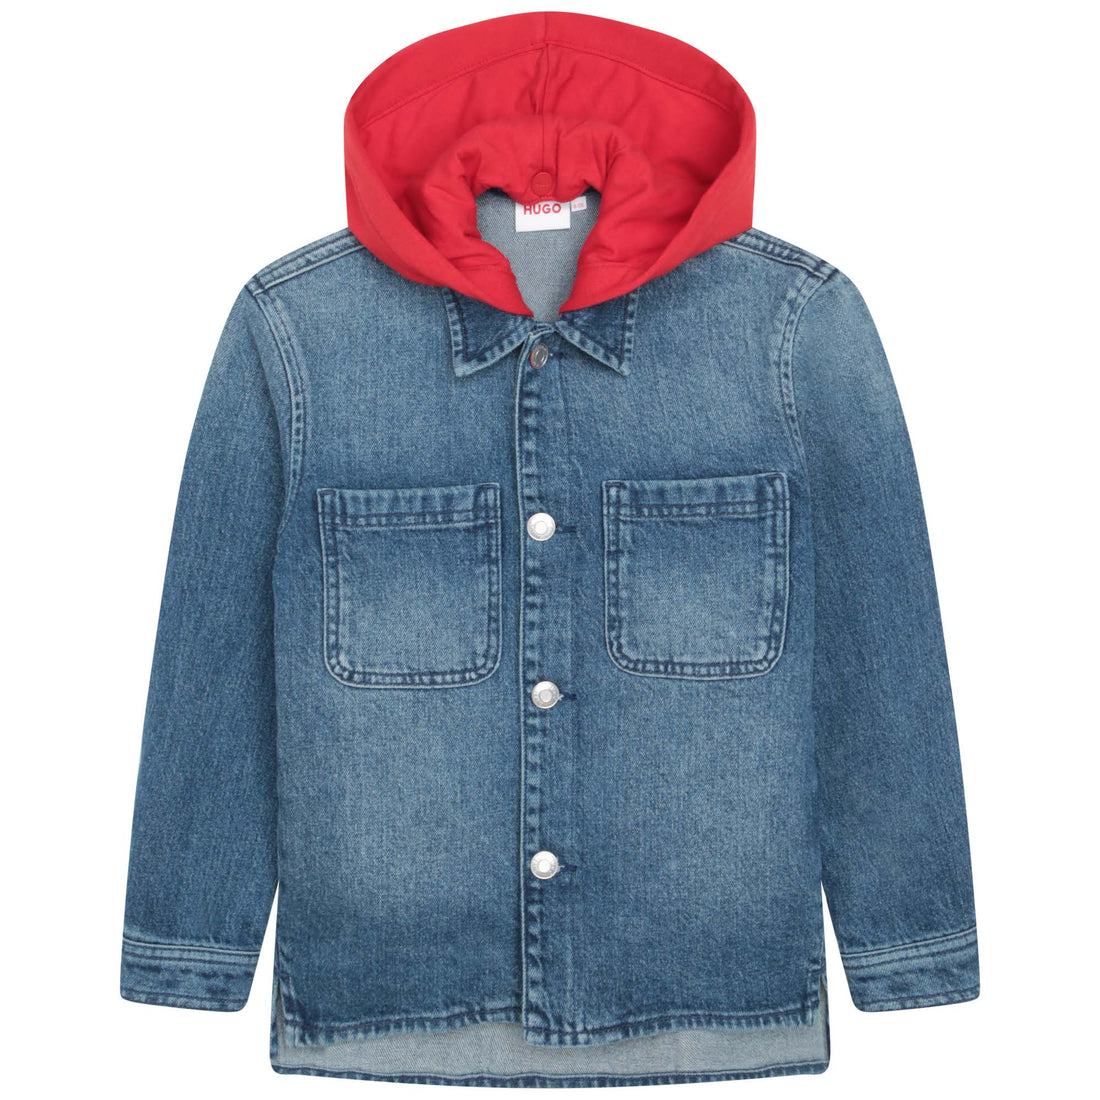 Hugo Hooded Jacket Style: G26108